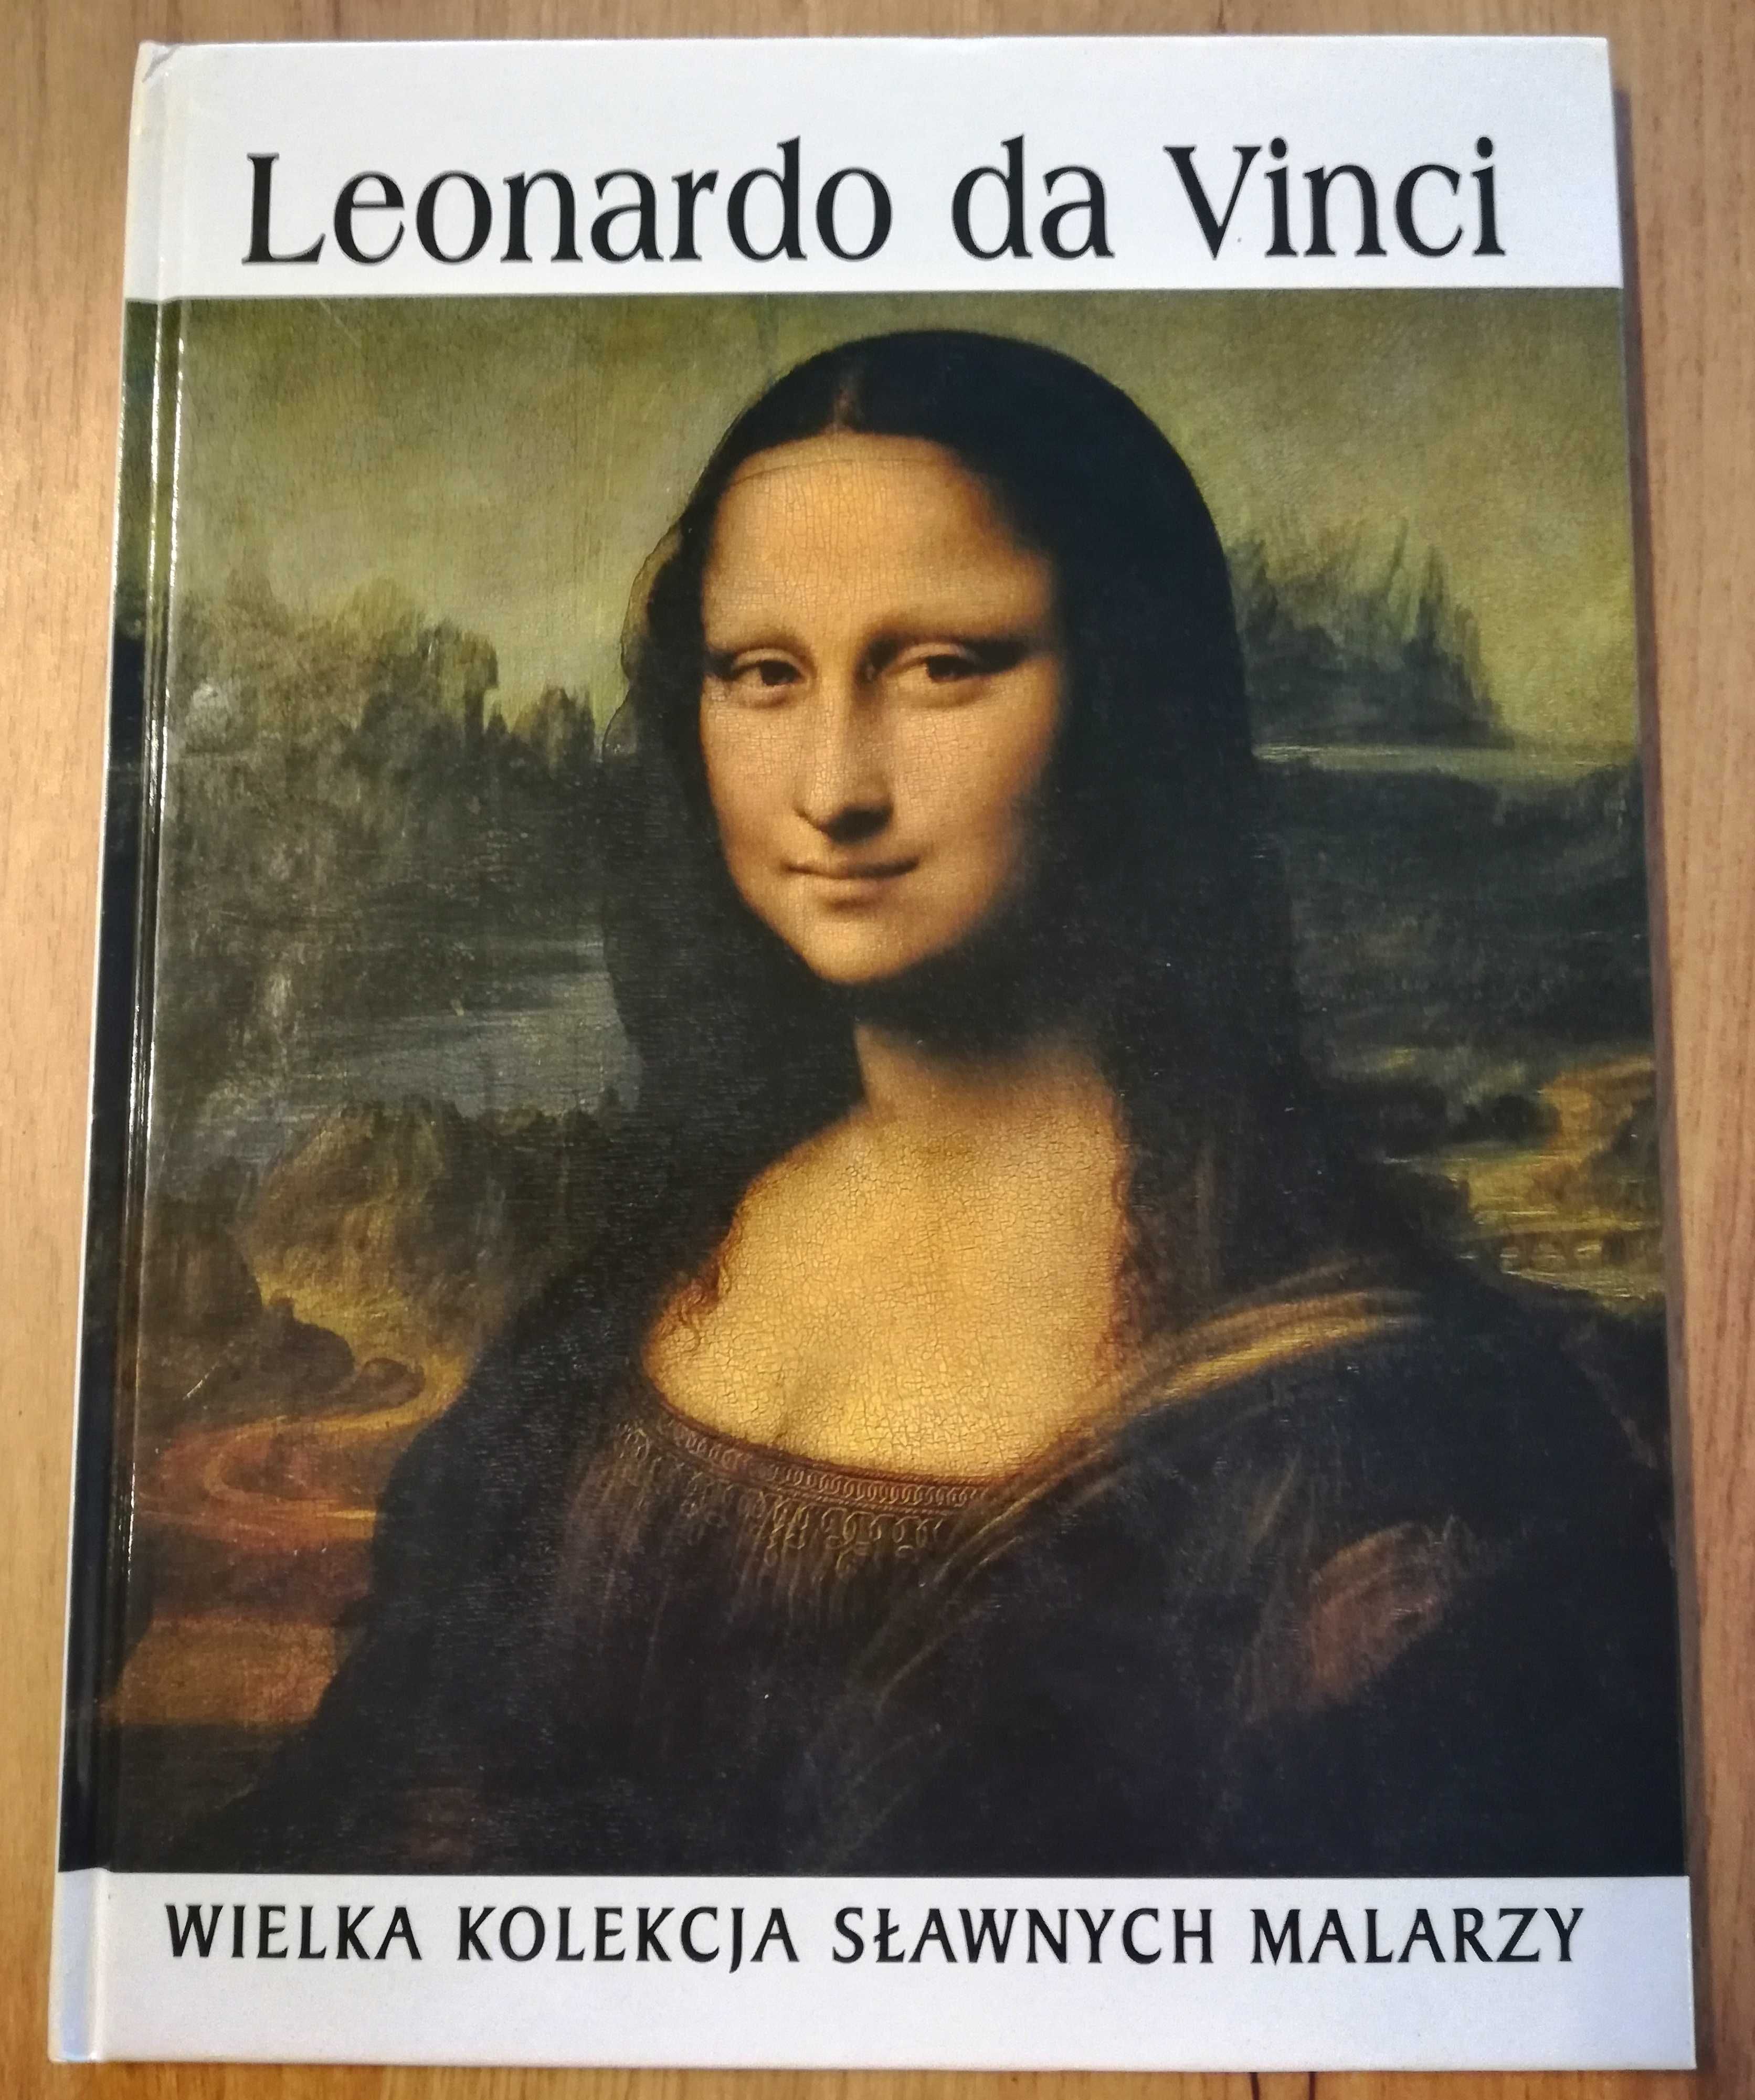 Wielka Kolekcja Sławnych Malarzy Tom 1 - Leonardo da Vinci